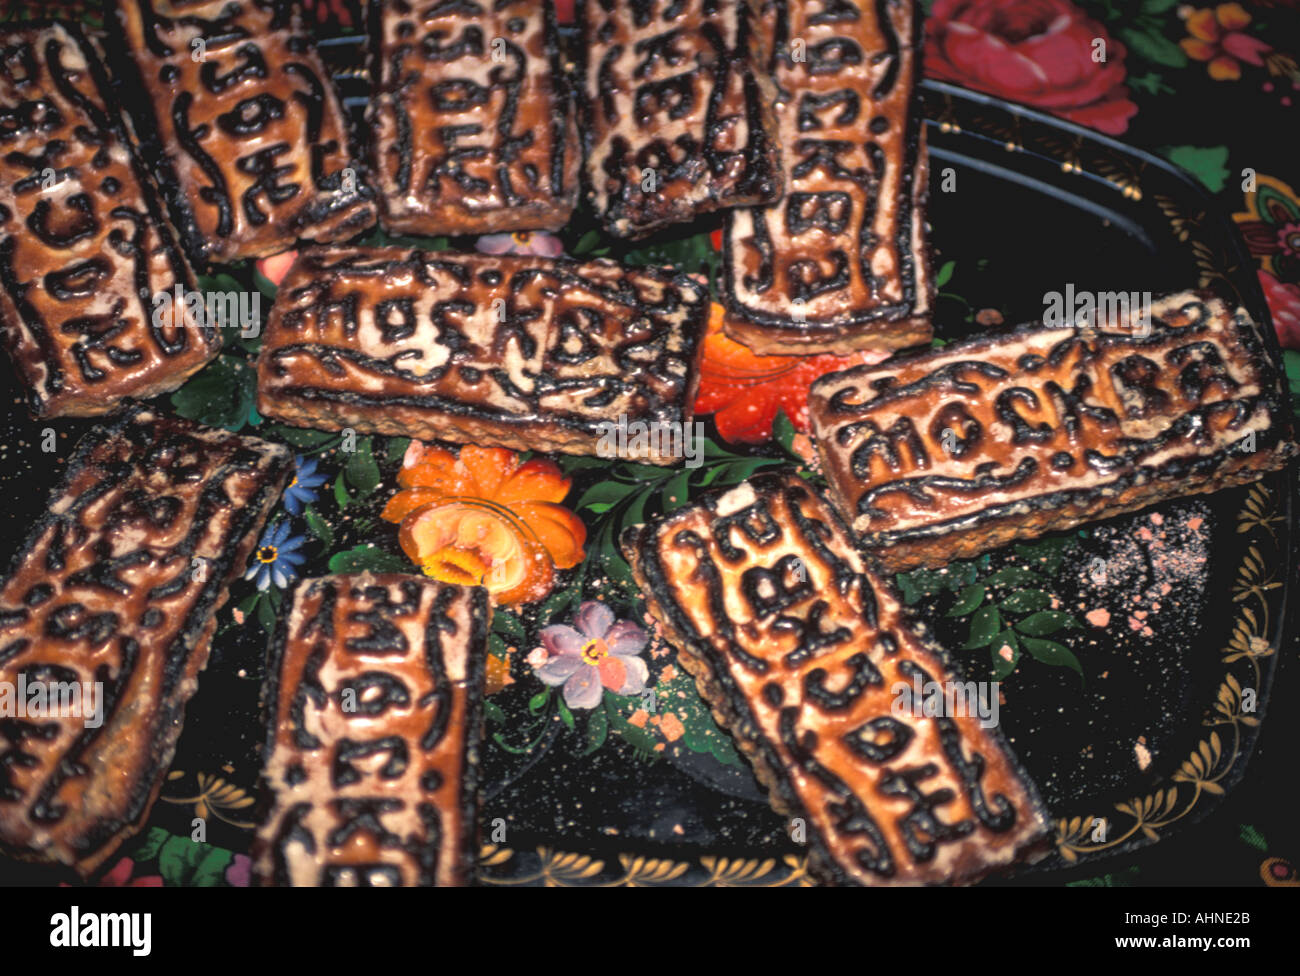 Moskau Russland Gebäck sagen Moskau in kyrillischen lokalen Lebensmitteln essen Küche Stockfoto